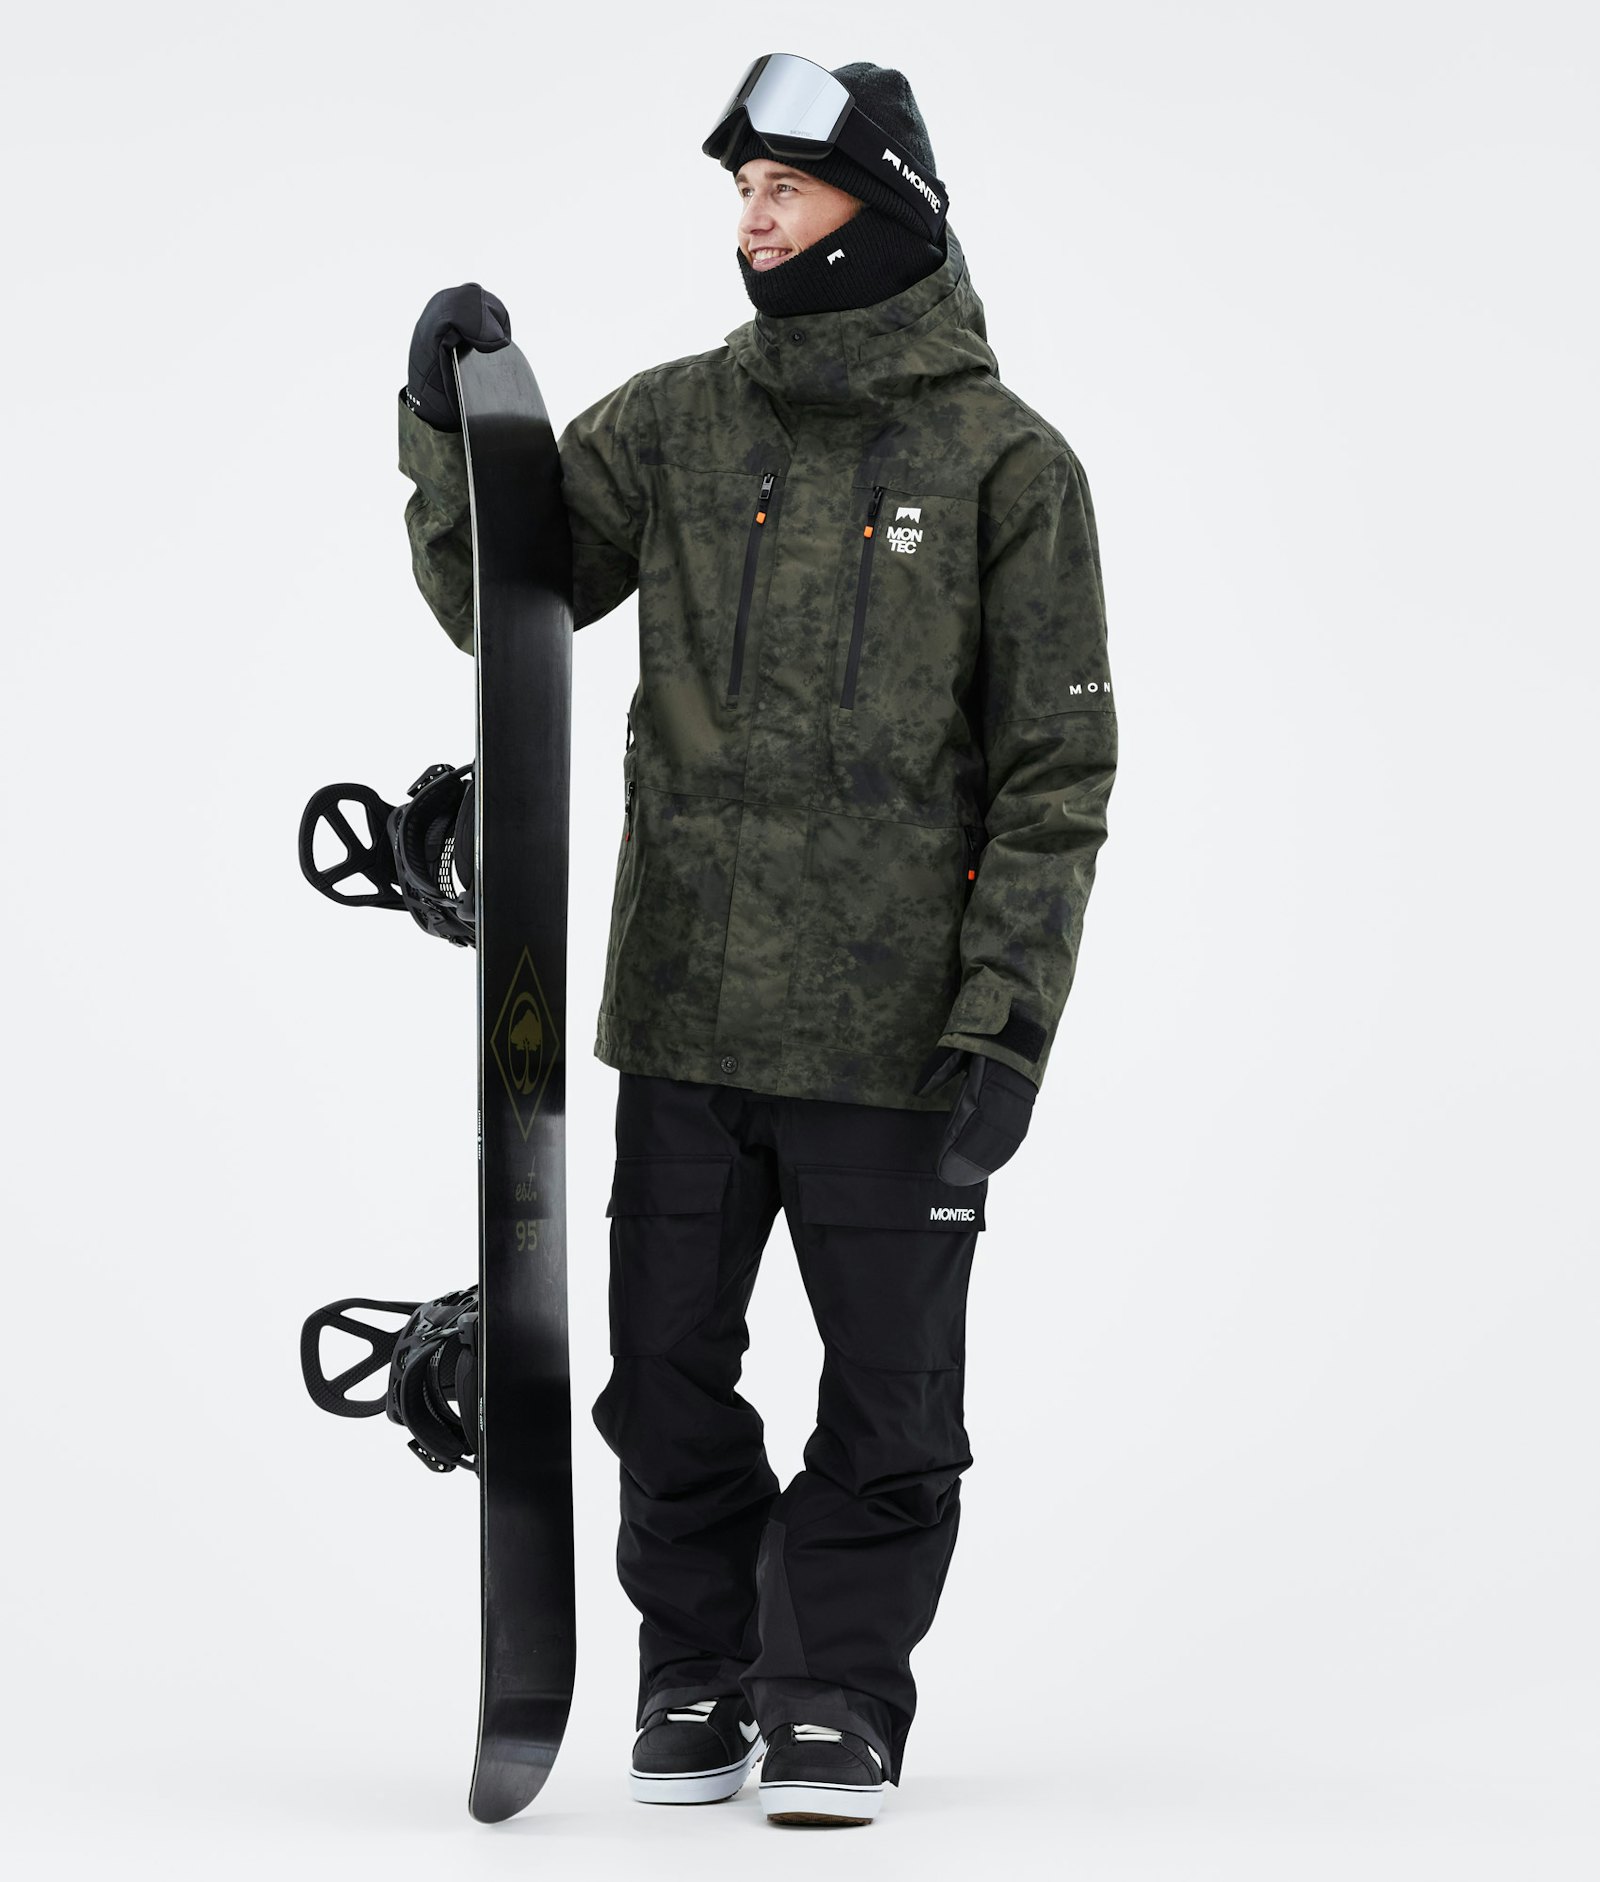 Fawk 2021 Snowboard Jacket Men Olive Green Tiedye